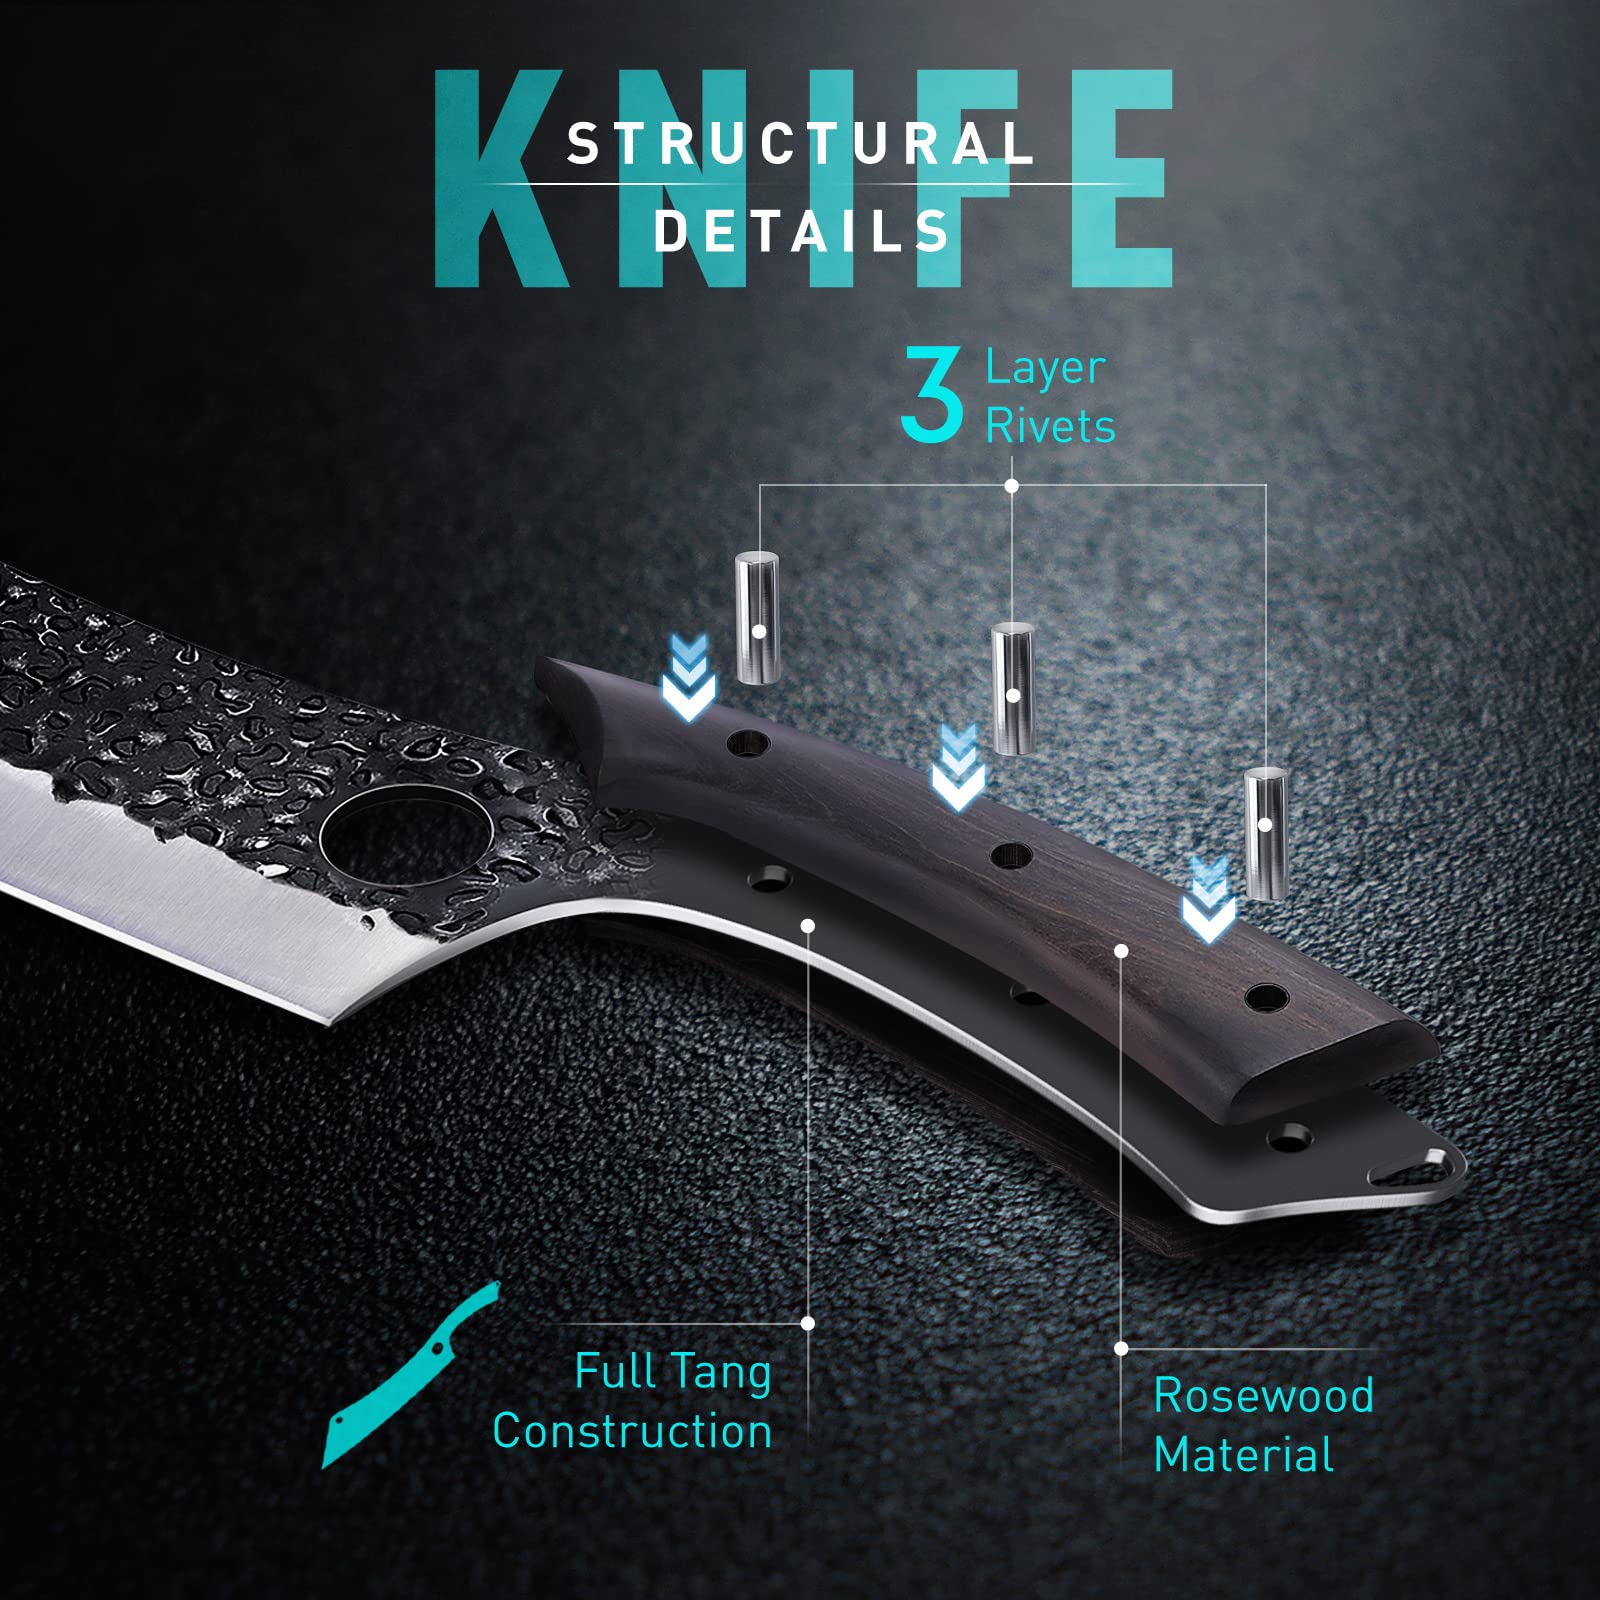 12 inch Slicer/Brisket Knife|Gunter Wilhelm